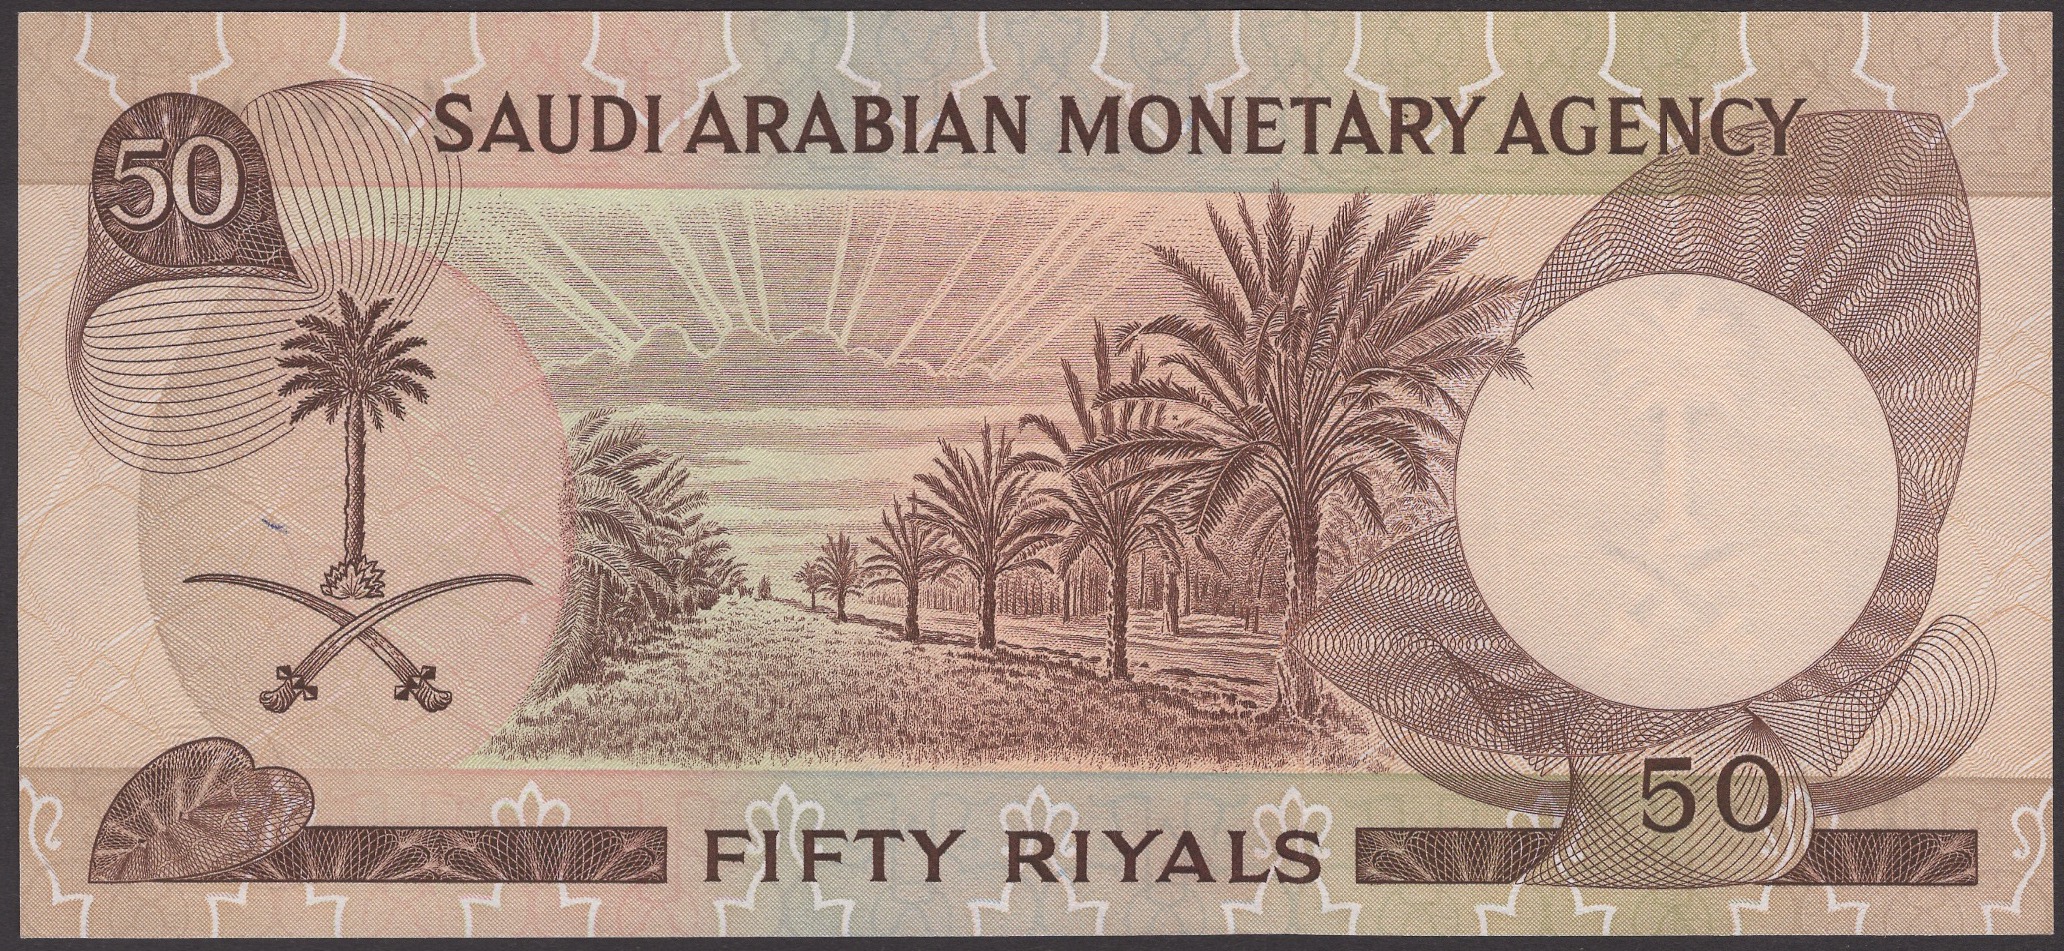 Saudi Arabian Monetary Agency, 50 Riyals, 1968, serial number 40/302816, signatures of... - Bild 2 aus 2